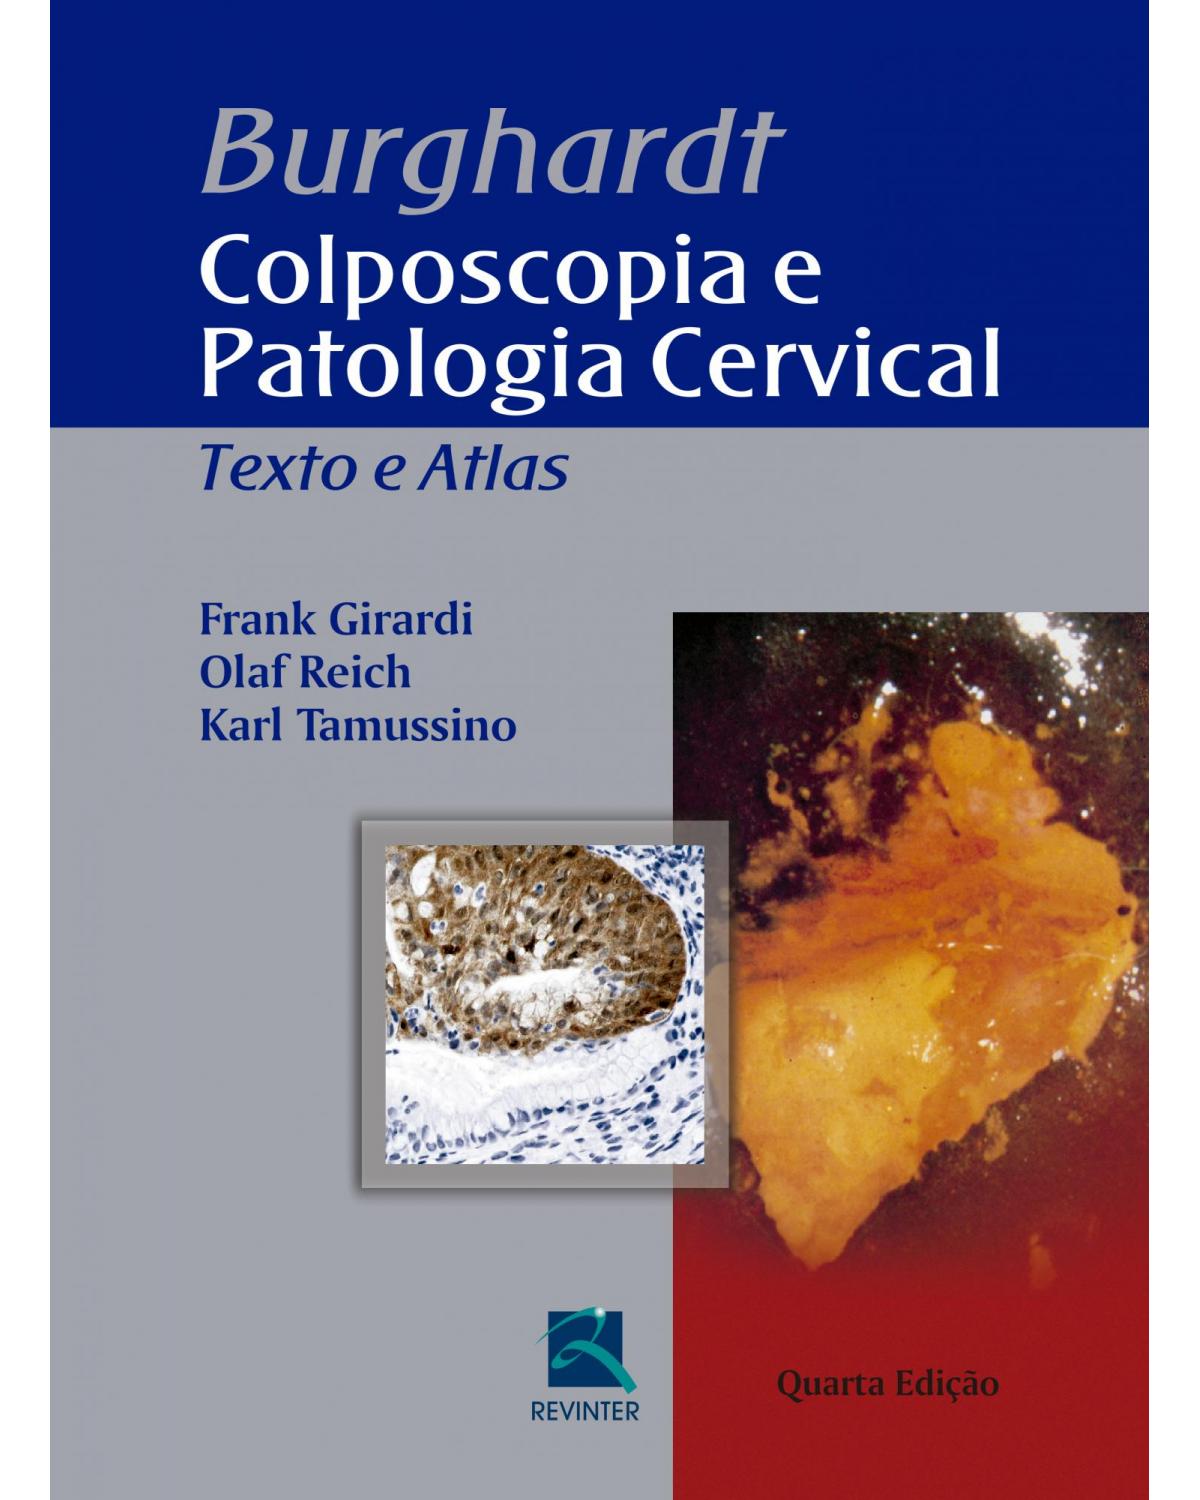 Burghardt - Colposcopia e Patologia Cervical - Texto e Atlas - 4ª Edição | 2017